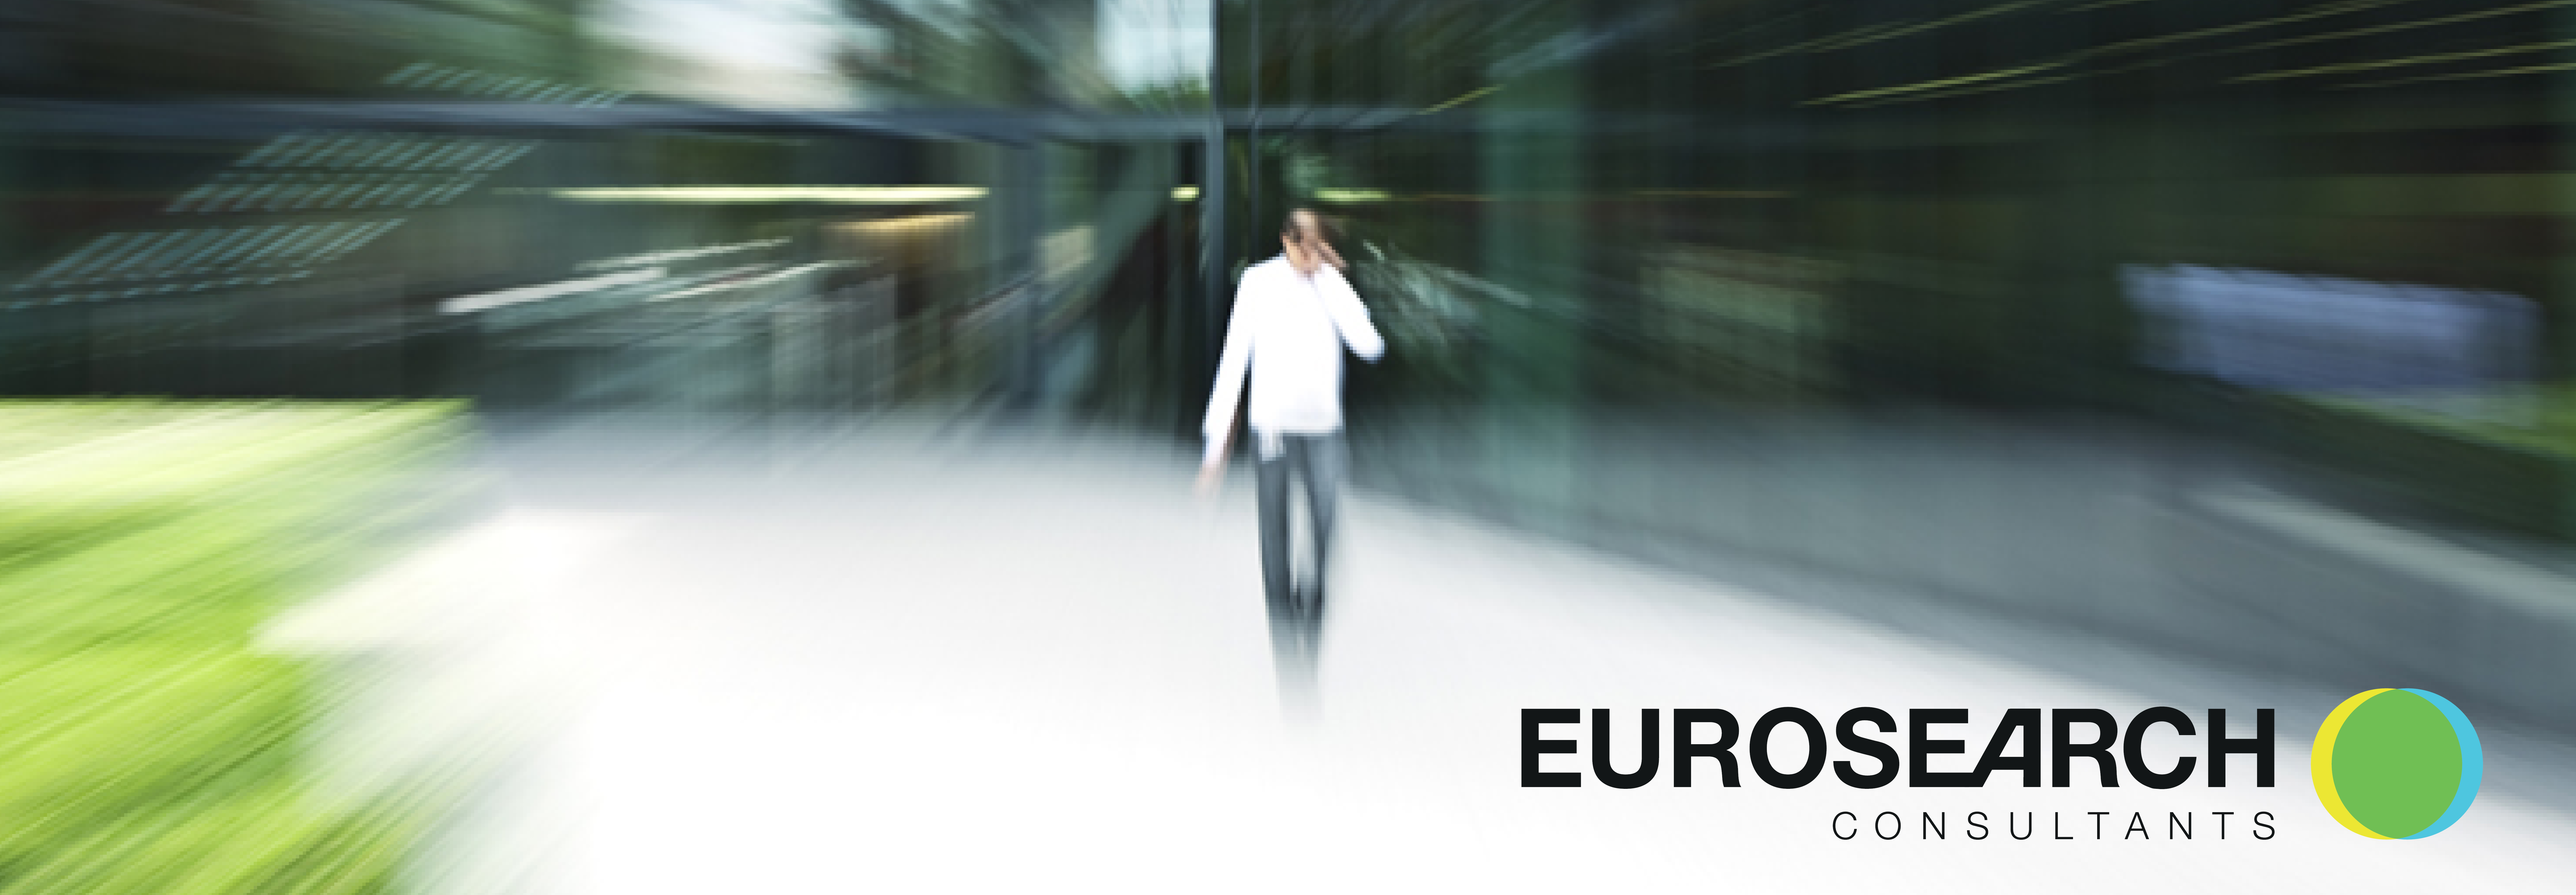 Eurosearch